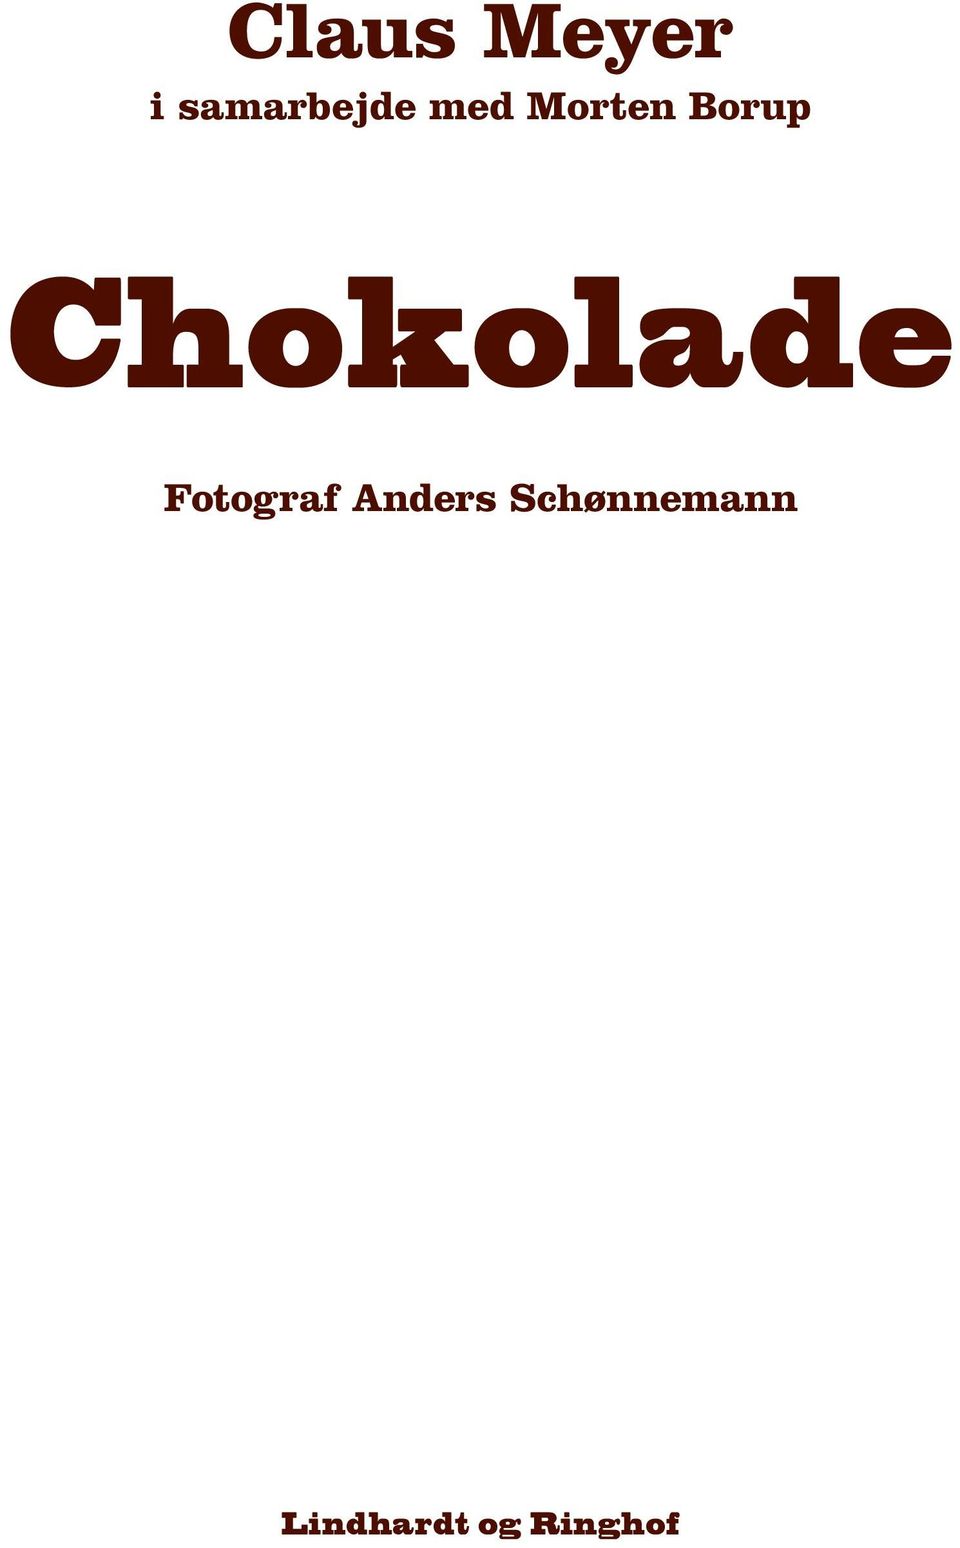 Chokolade Fotograf